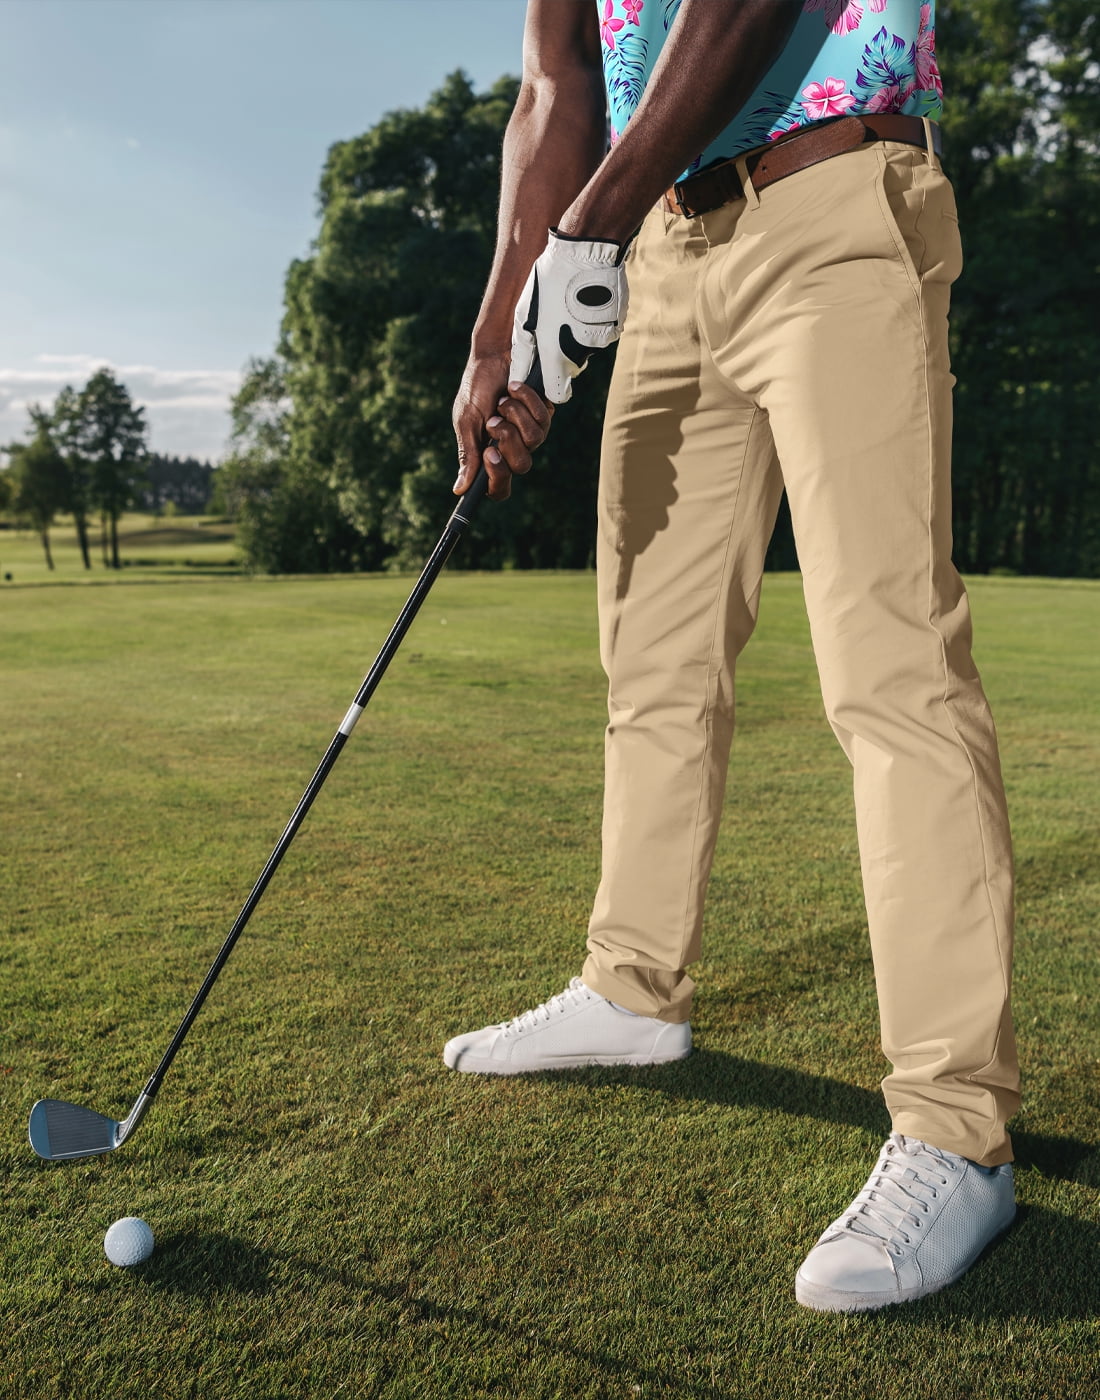 Nike Golf Tour Performance Dri-Fit Gray Golf Pants 639779 021 Men's Size 30  x 32